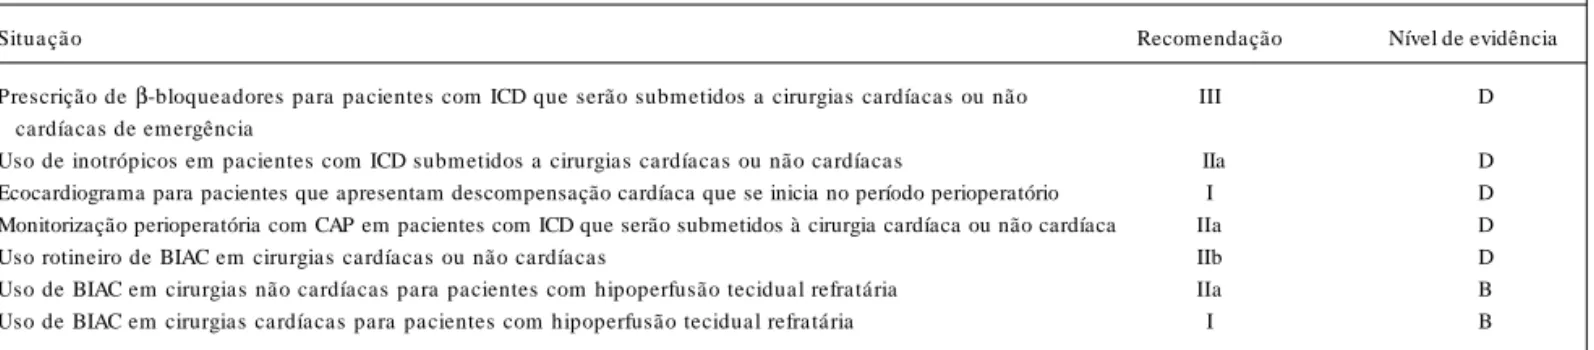 Tabela XXIII - Recomendações para Pacientes com ICD Diante da Necessidade de Cirurgia Não Cardíaca e Cardíaca